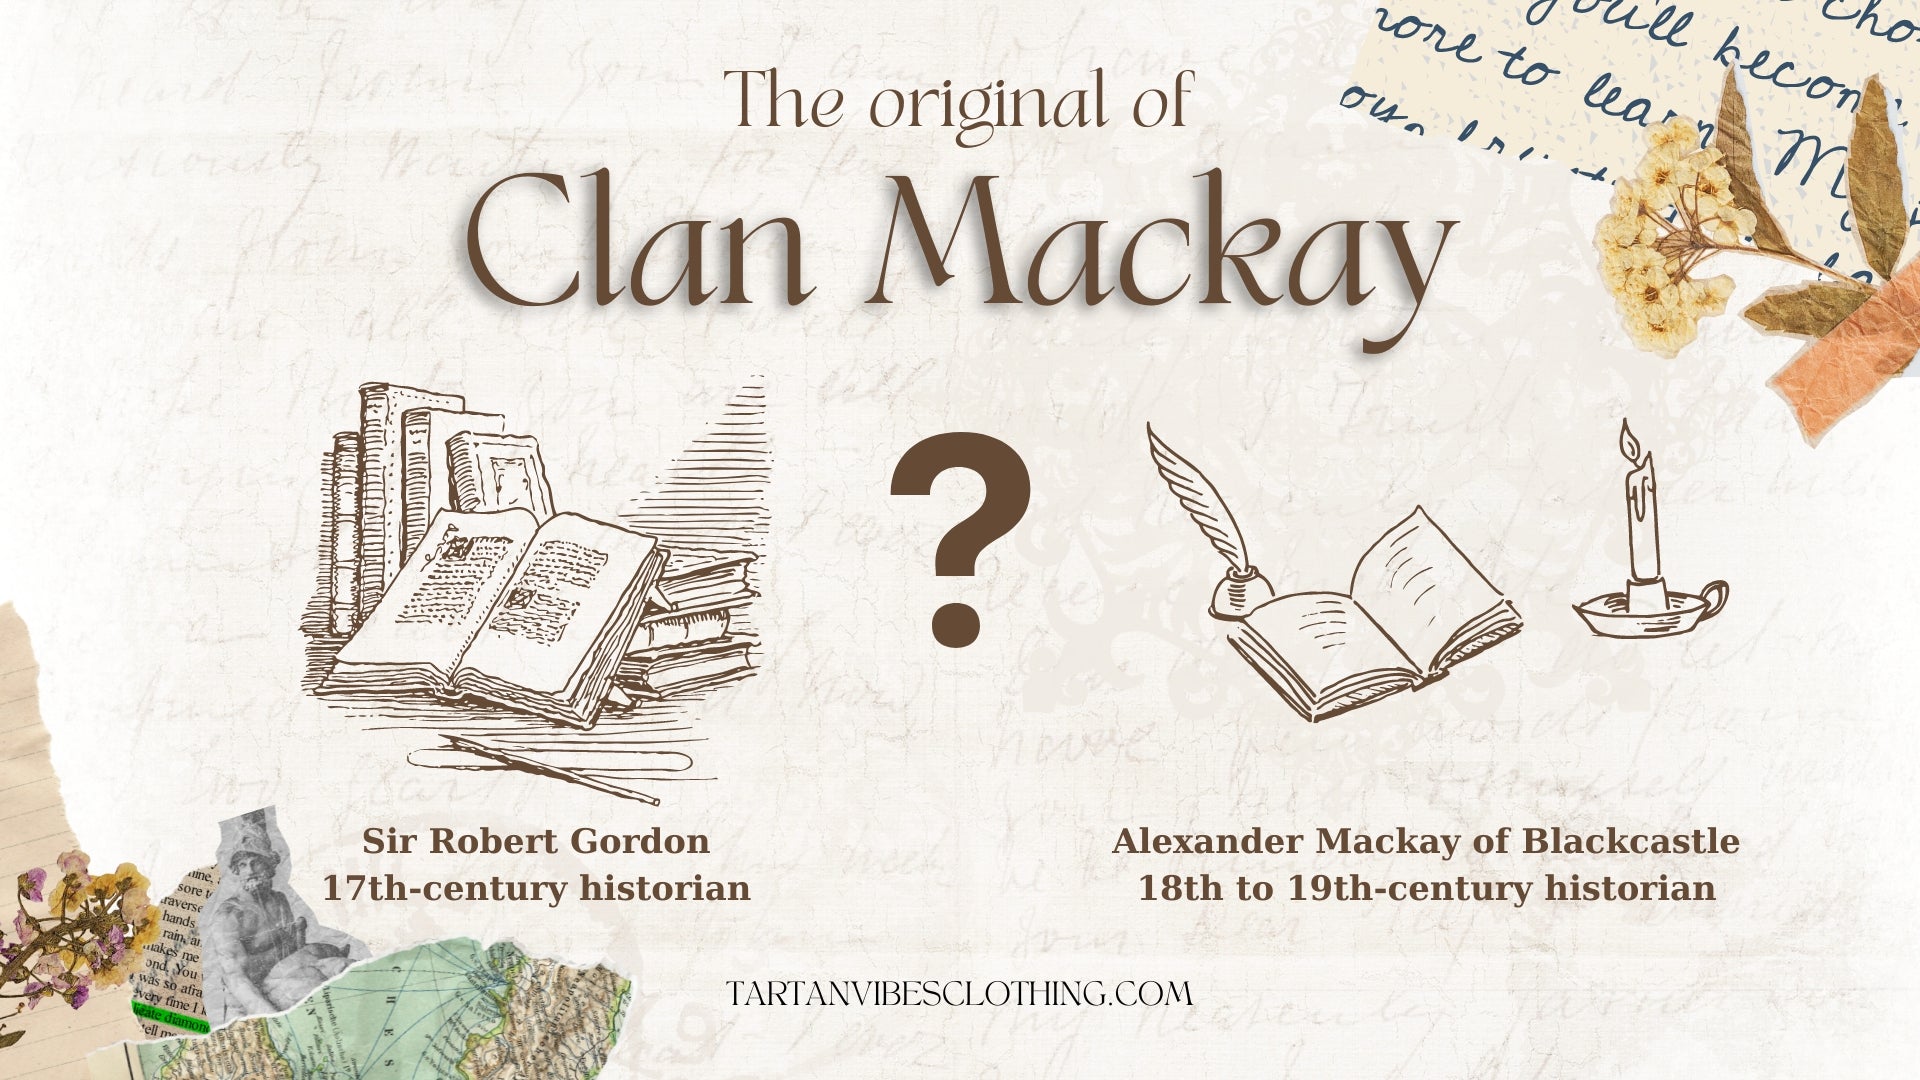 The original of Clan Mackay